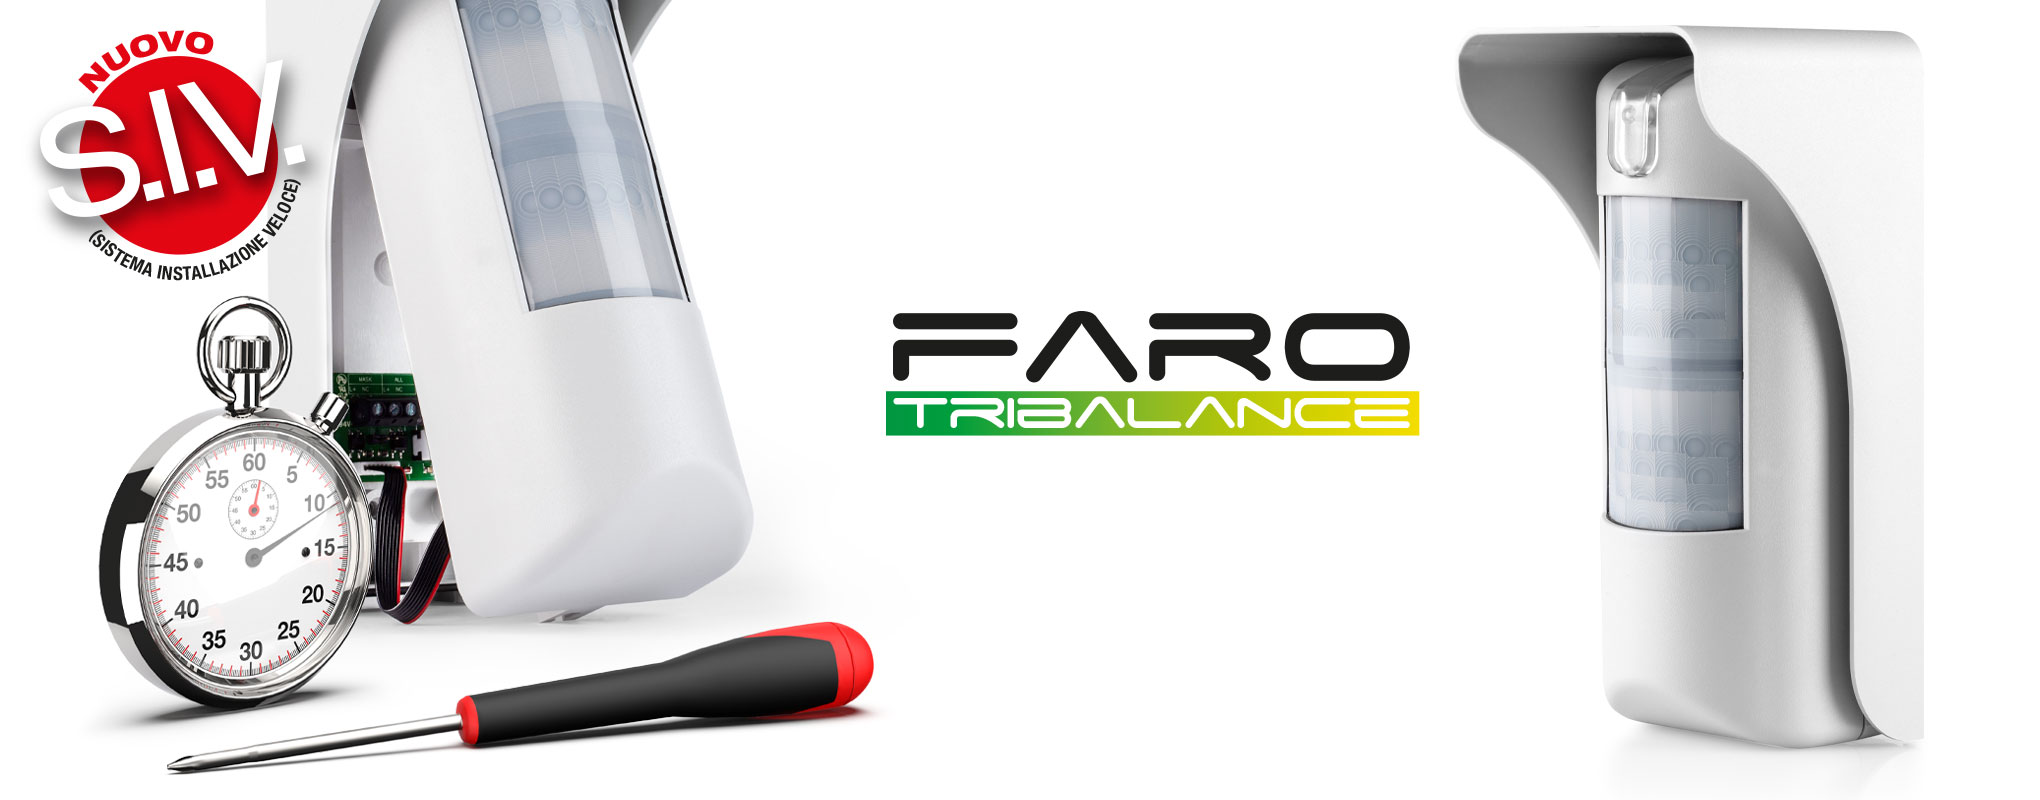 Faro Tribalance | RILEVATORE TRIPLA TECNOLOGIA DA ESTERNO